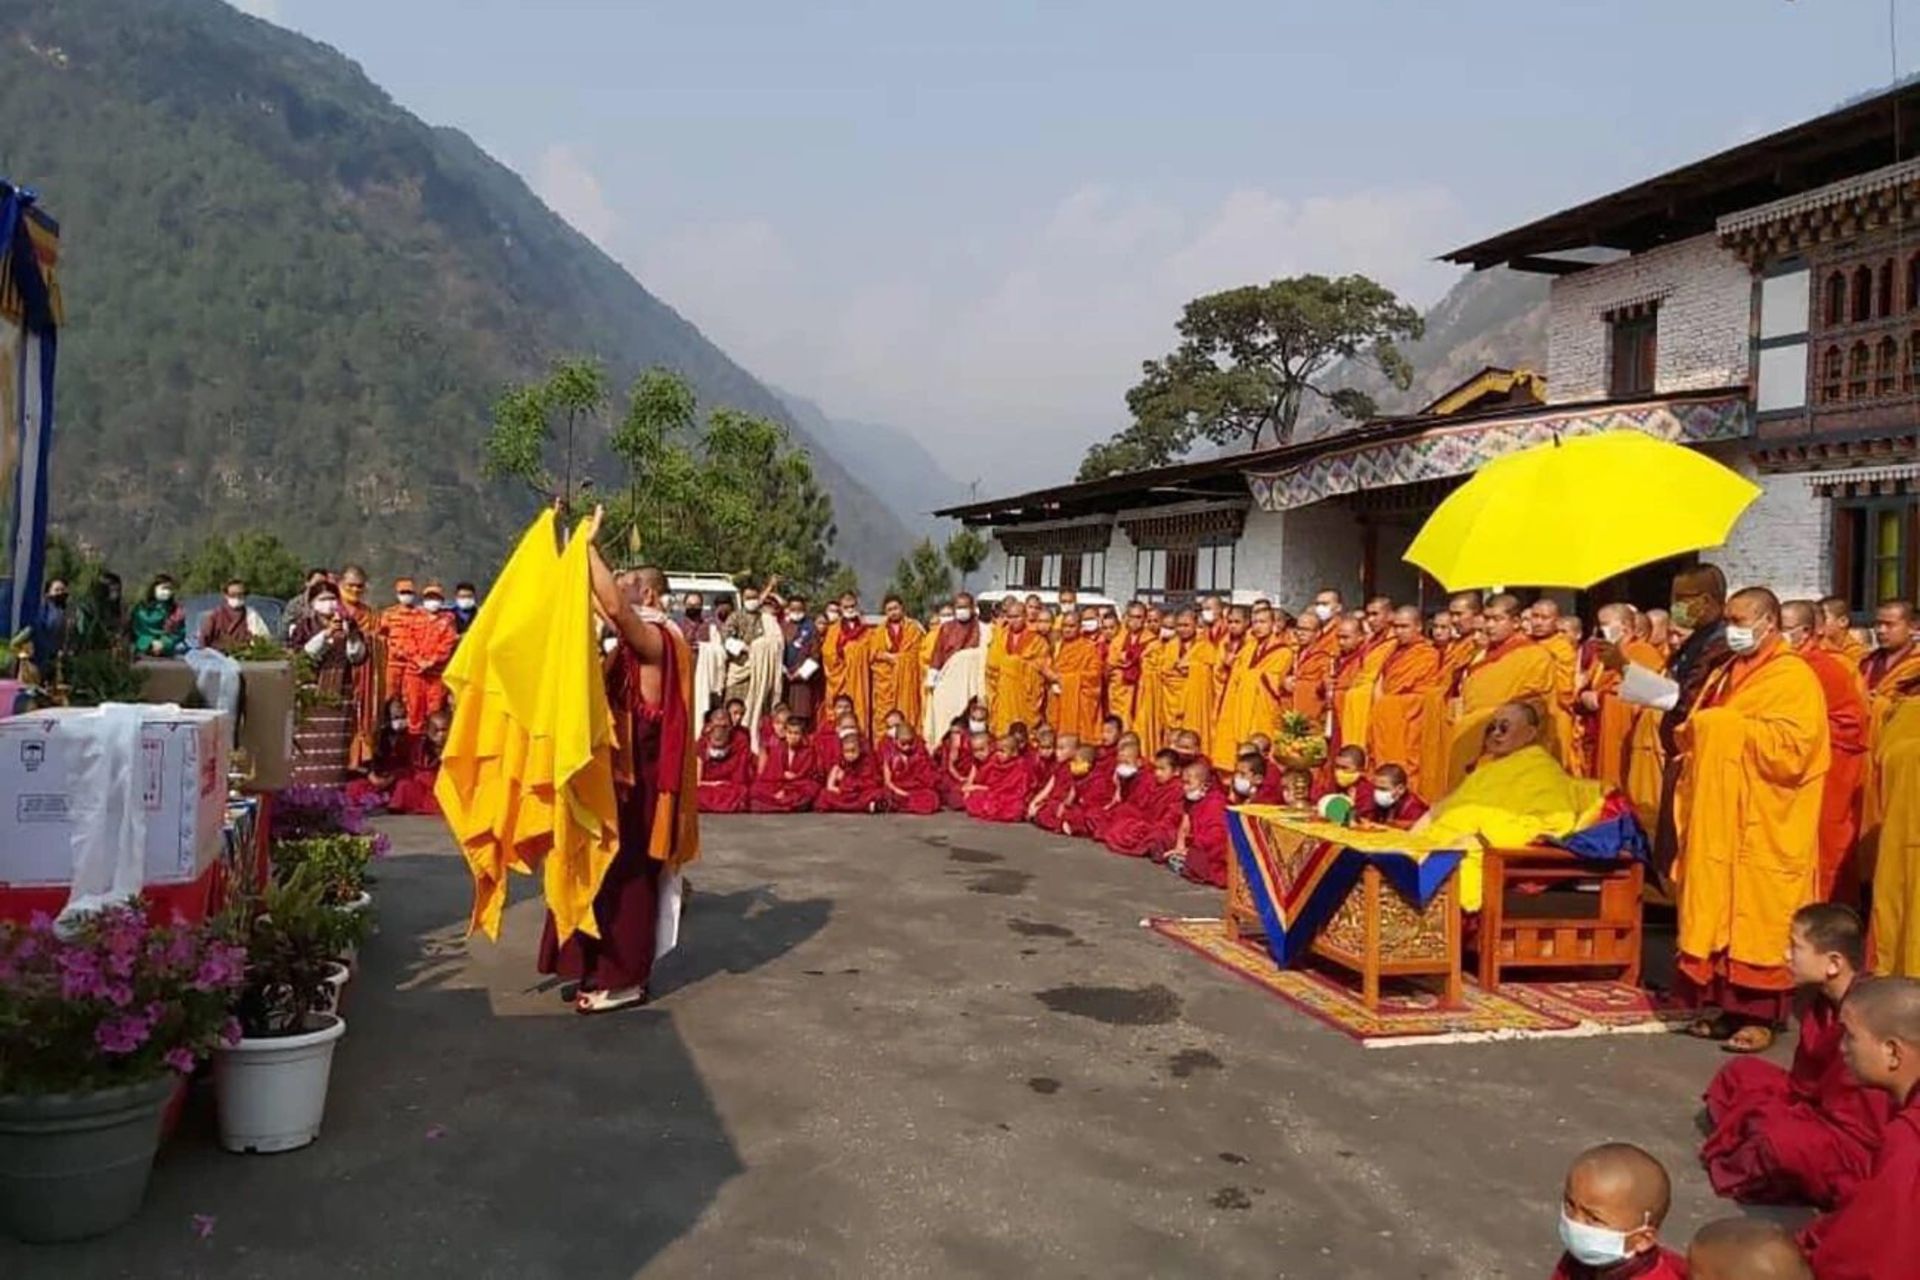 مراسم مذهبی بودایی همزمان با رسیدن واکسن کرونا در بوتان